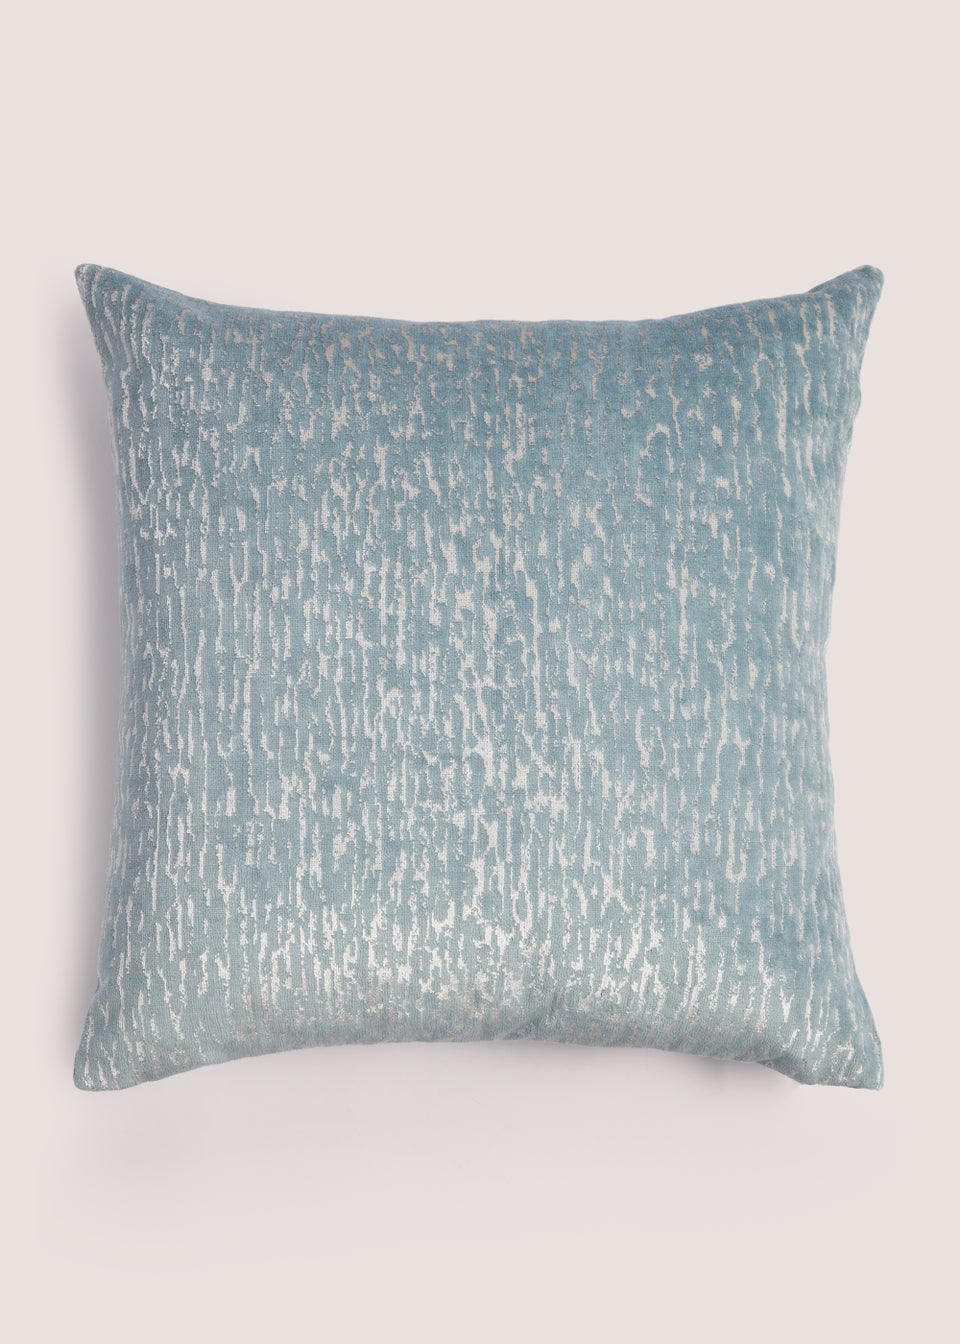 Blue Mottled Velvet Cushion (43cm x 43cm)